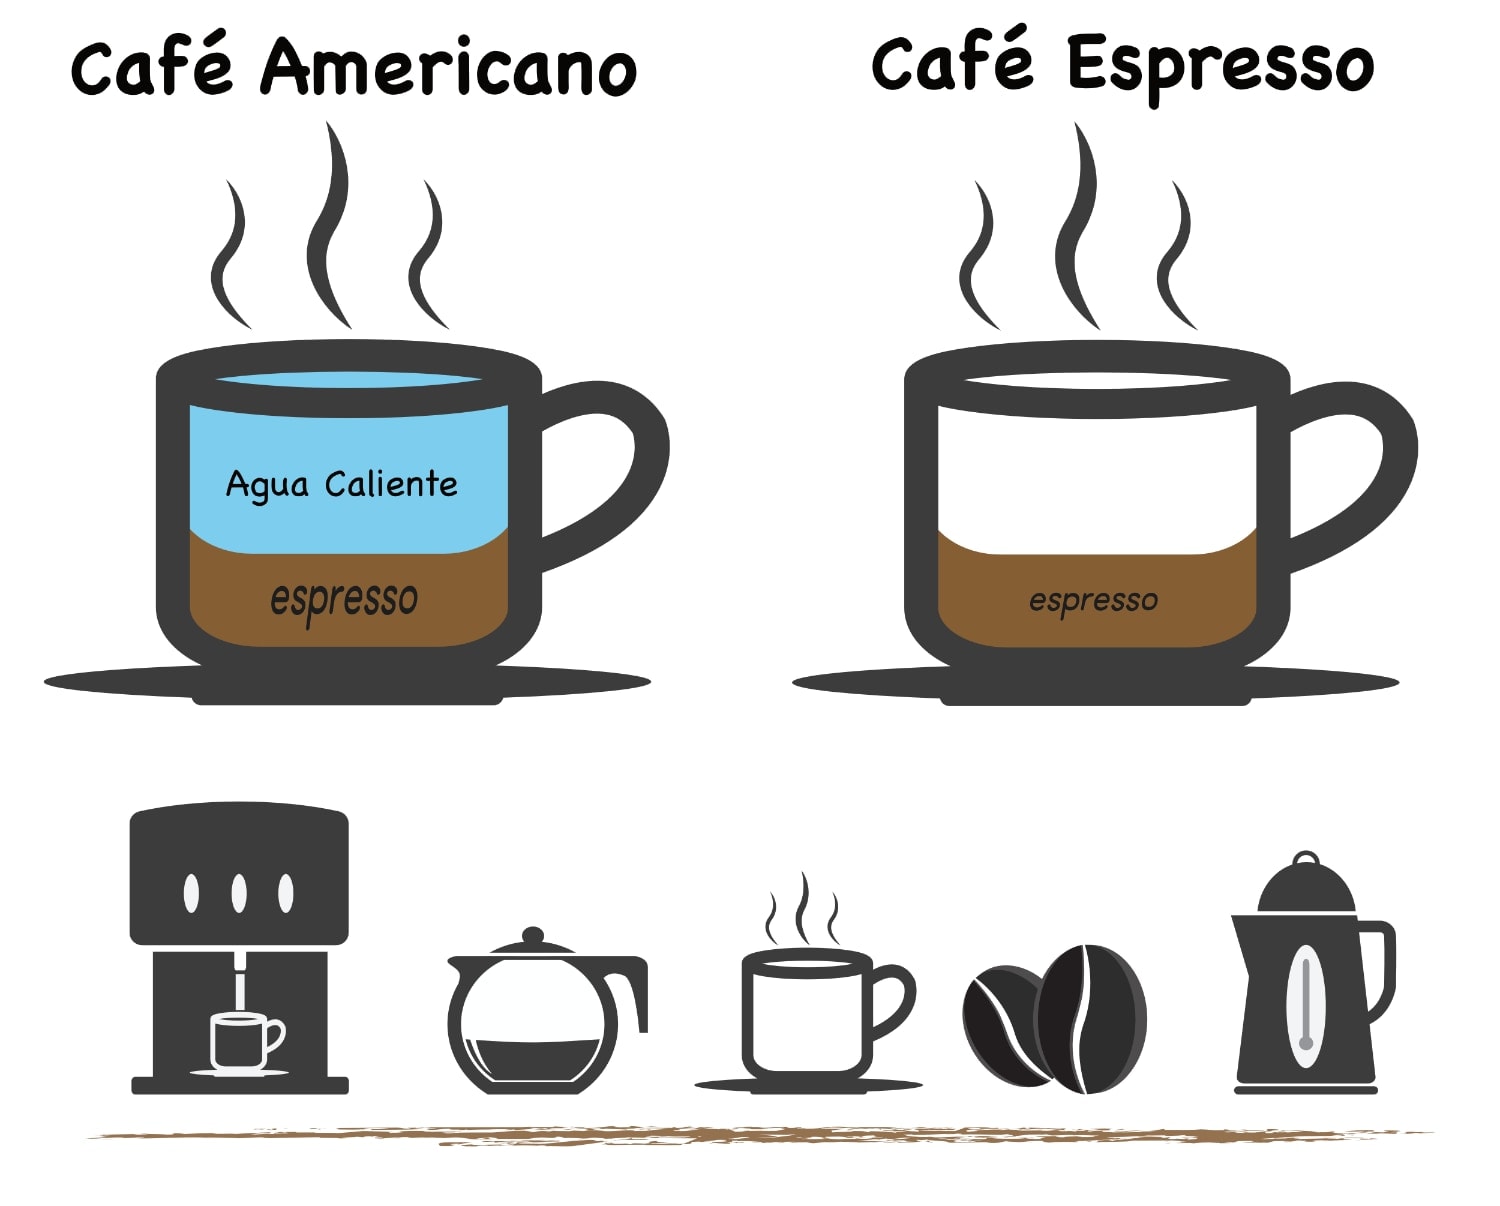 que-diferencia-hay-entre-un-cafe-expreso-y-un-americano